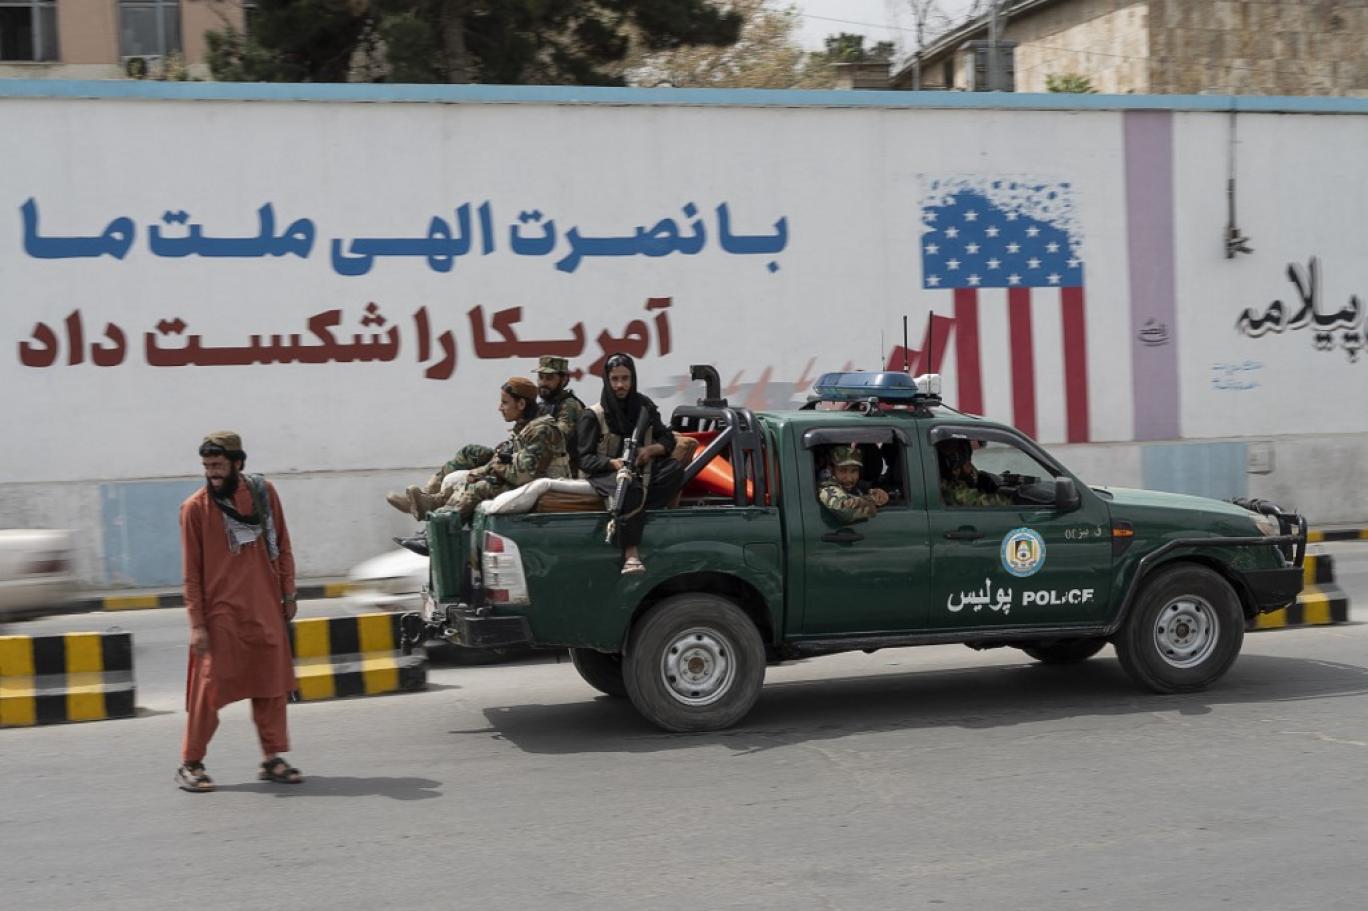 طالبان پس از دوباره به قدرت رسیدن در افغانستان، این پیام را بر دیوار سفارت آمریکا در کابل نوشتند - WAKIL KOHSAR / AFP